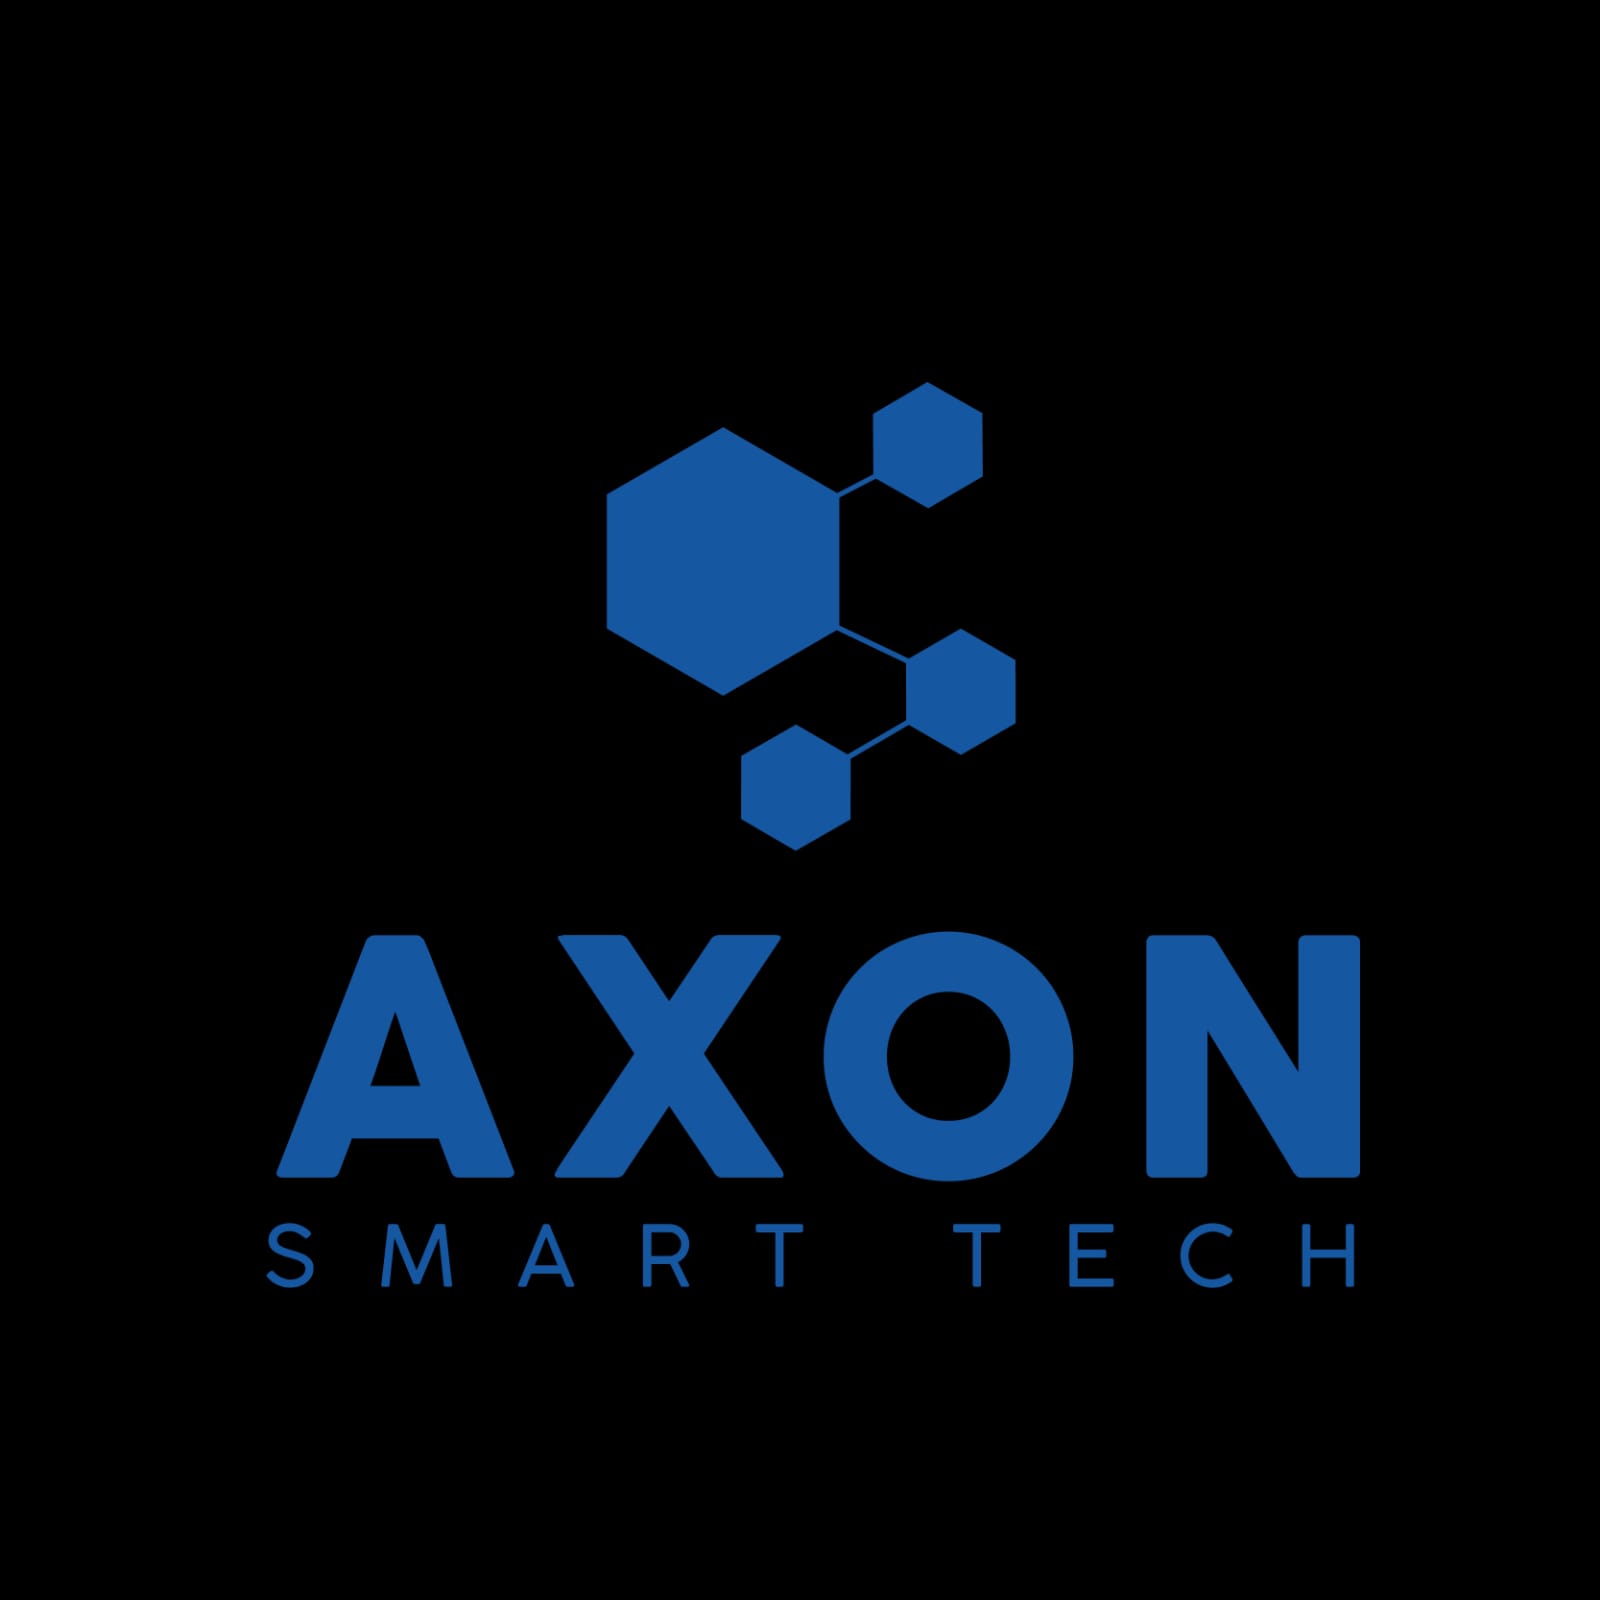 AXON SMART TECH logo